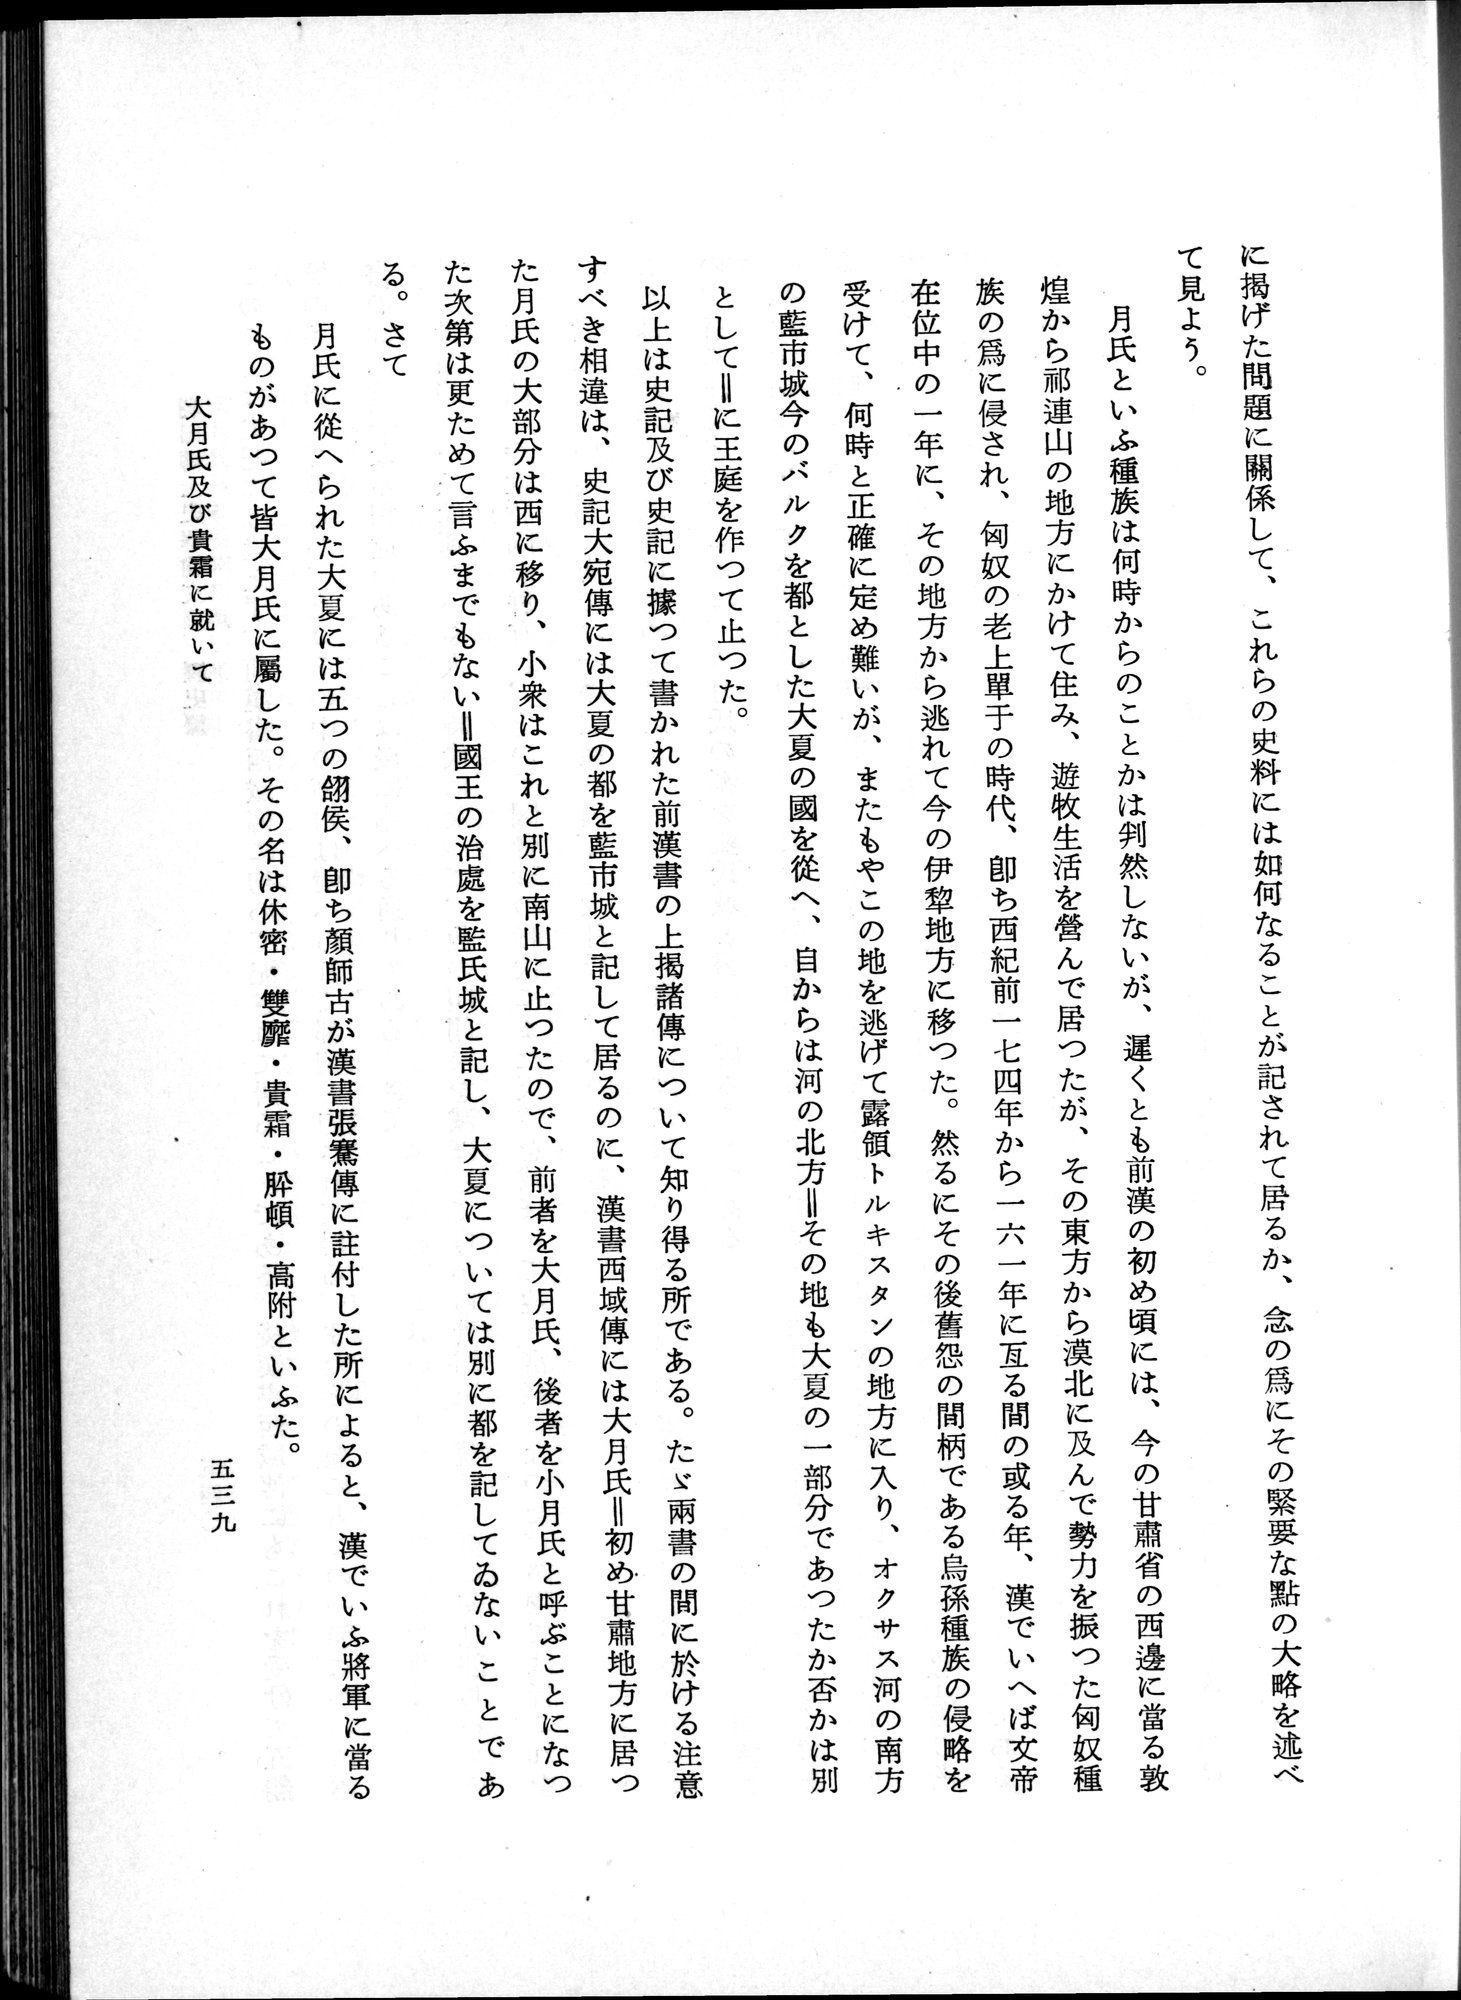 羽田博士史学論文集 : vol.1 / Page 577 (Grayscale High Resolution Image)